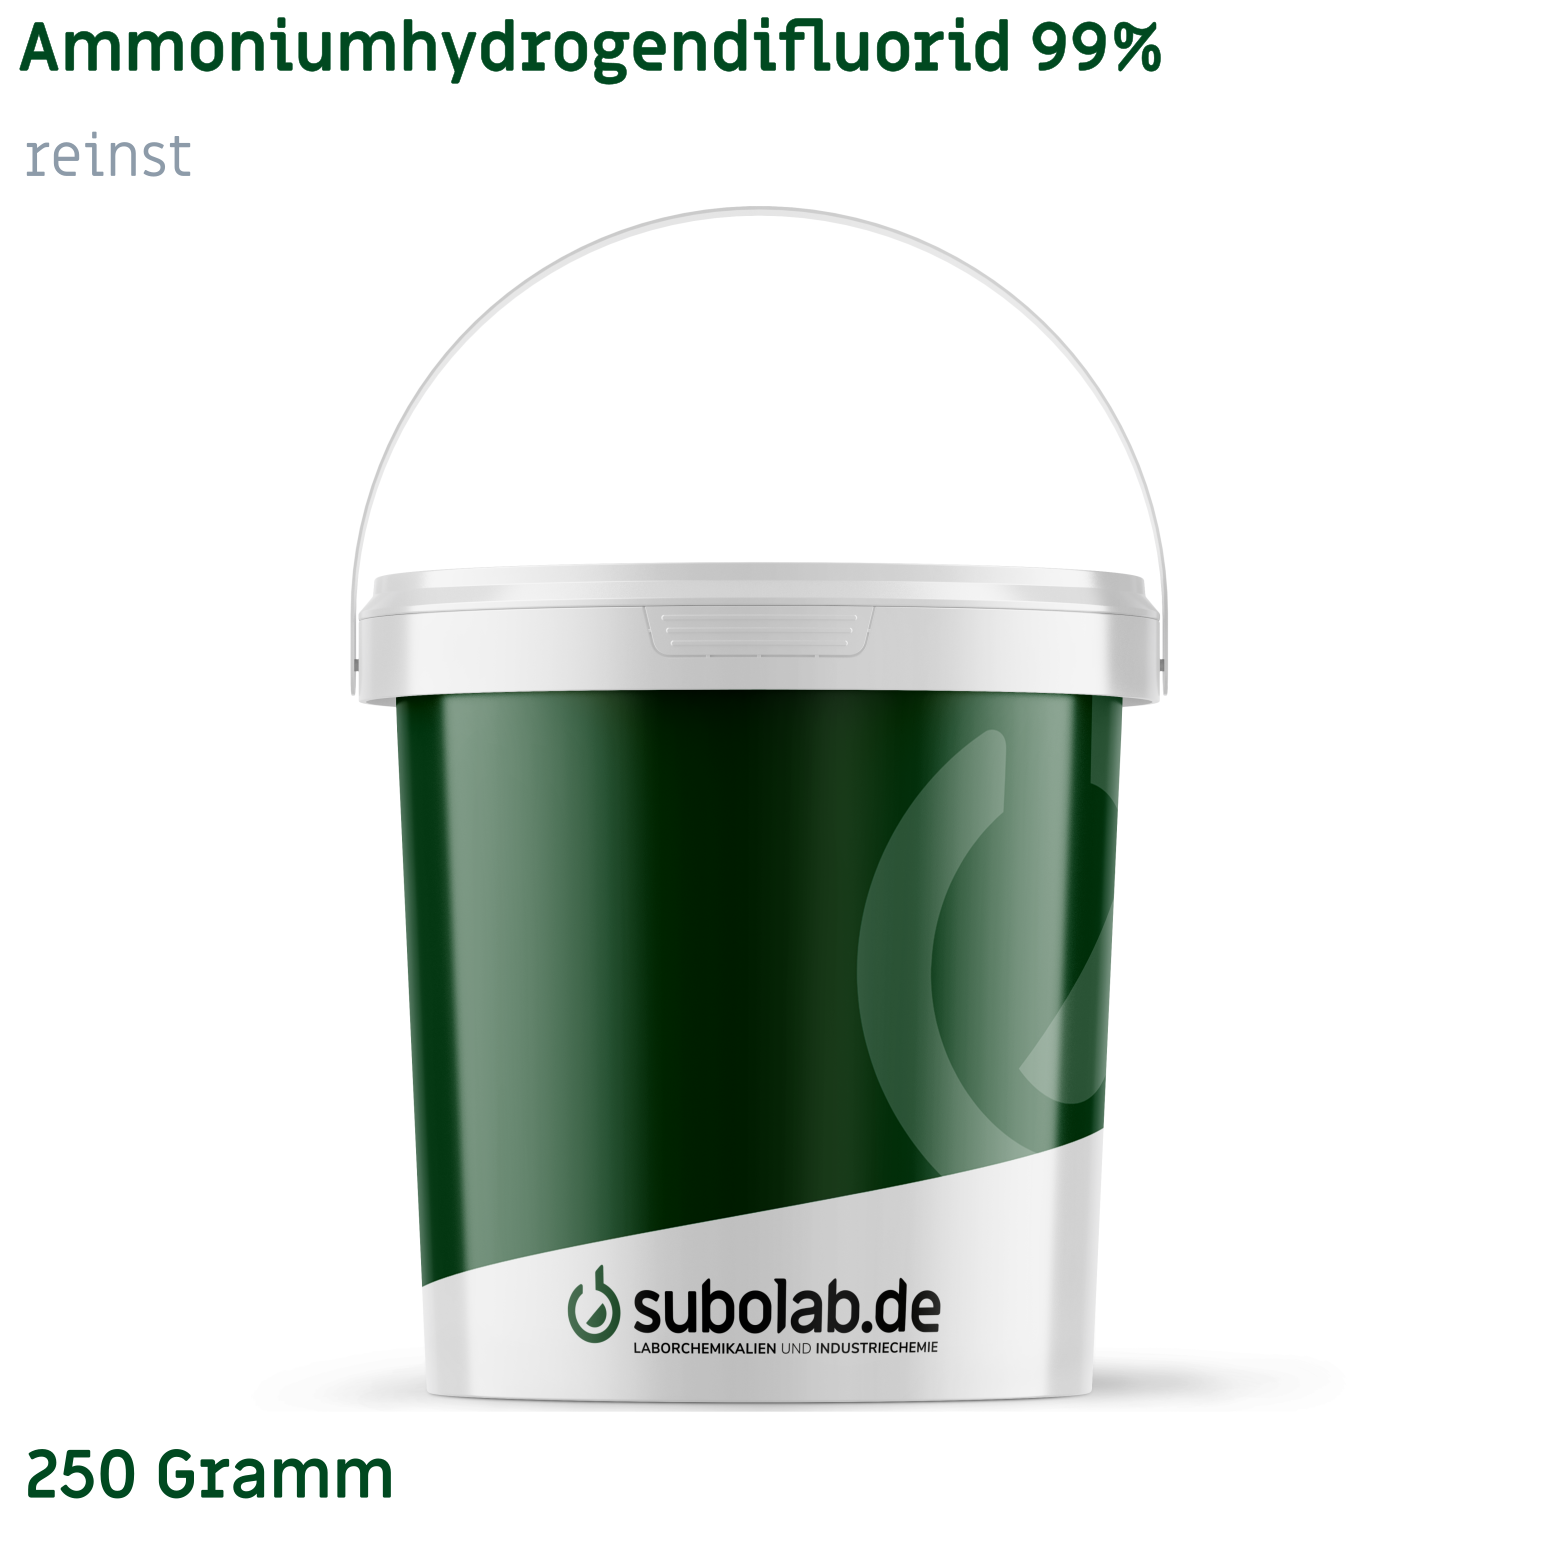 Bild von Ammoniumhydrogendifluorid 99% reinst (250 Gramm)